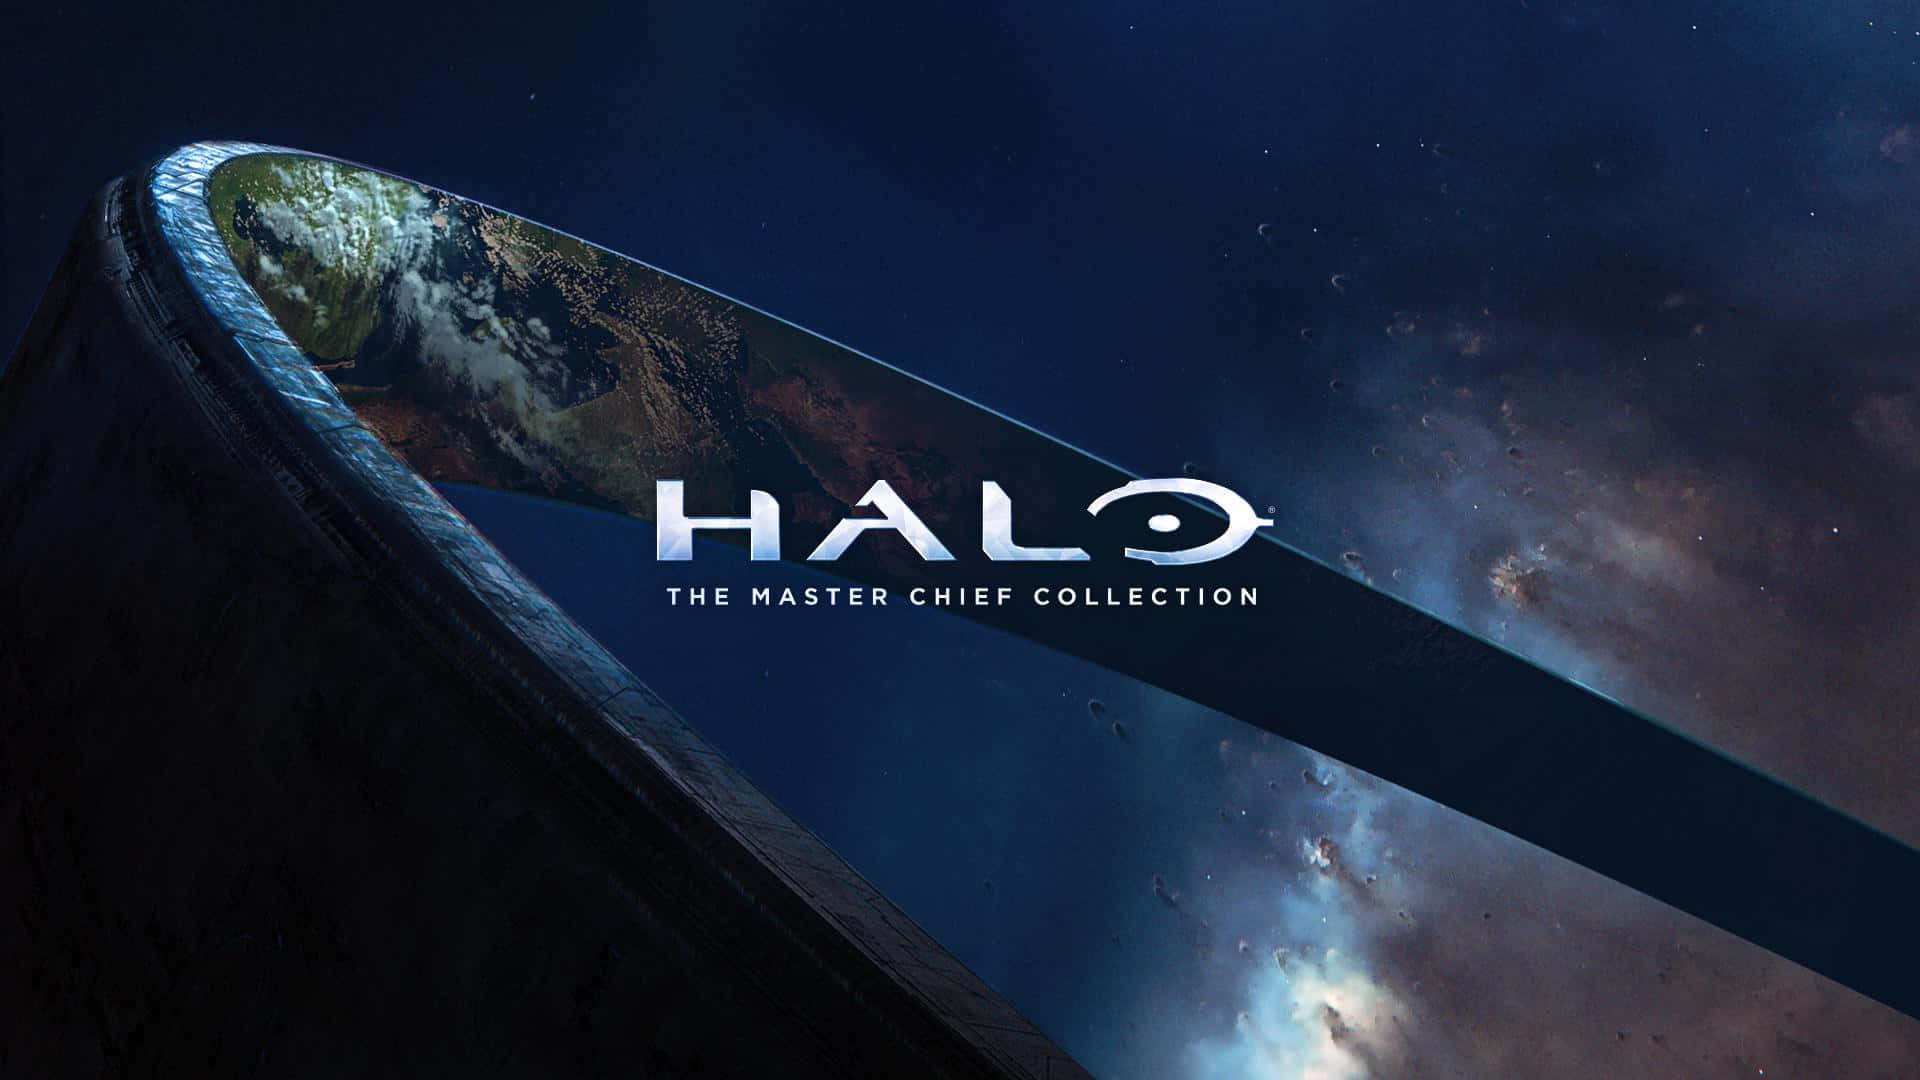 Titolomaster Chief Esplora L'ampio Paesaggio Di Halo Infinite